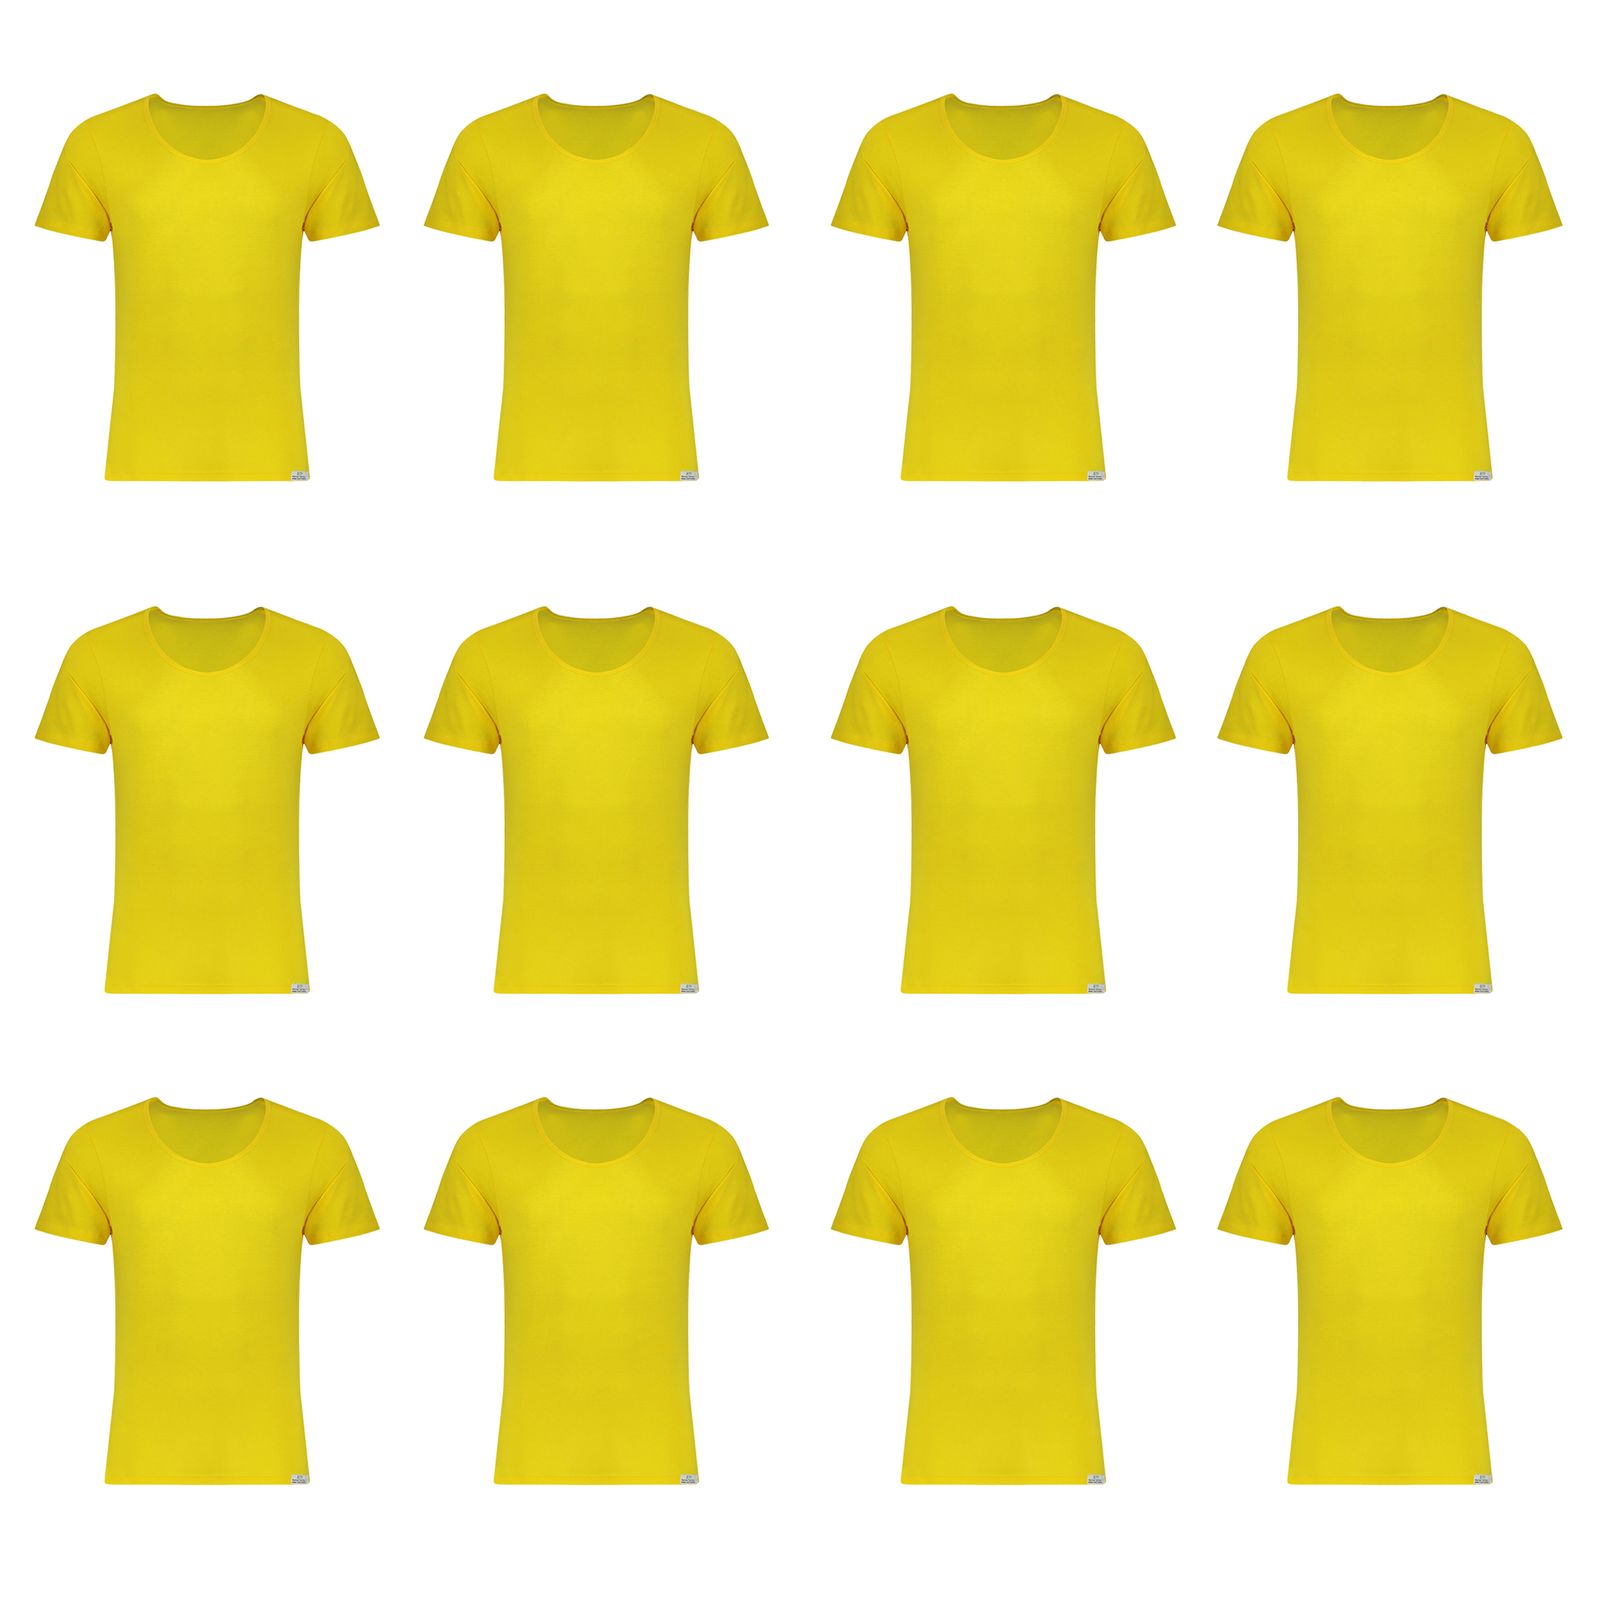 زیرپوش آستین دار مردانه برهان تن پوش مدل 5-02 رنگ زرد بسته 12 عددی